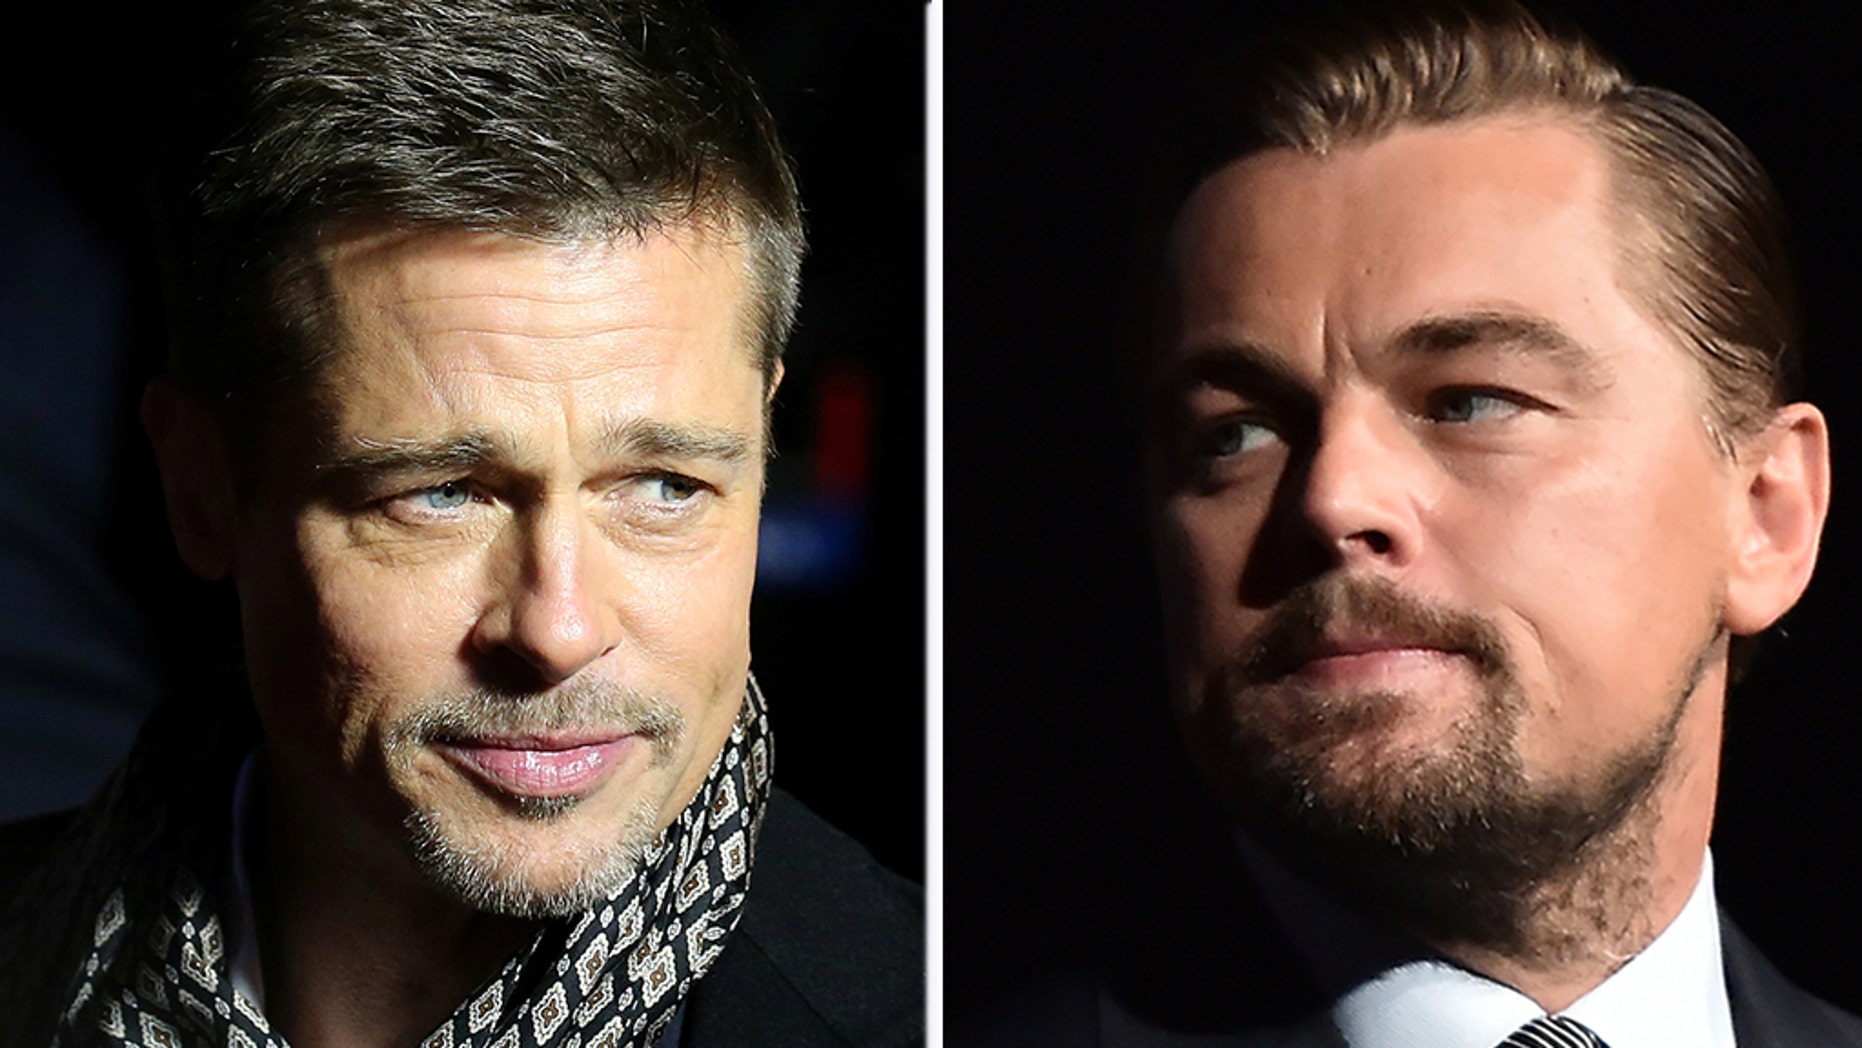 Brad Pitt et Leonardo DiCaprio sont apparus dans une vidéo publiée vendredi par NowThis News.